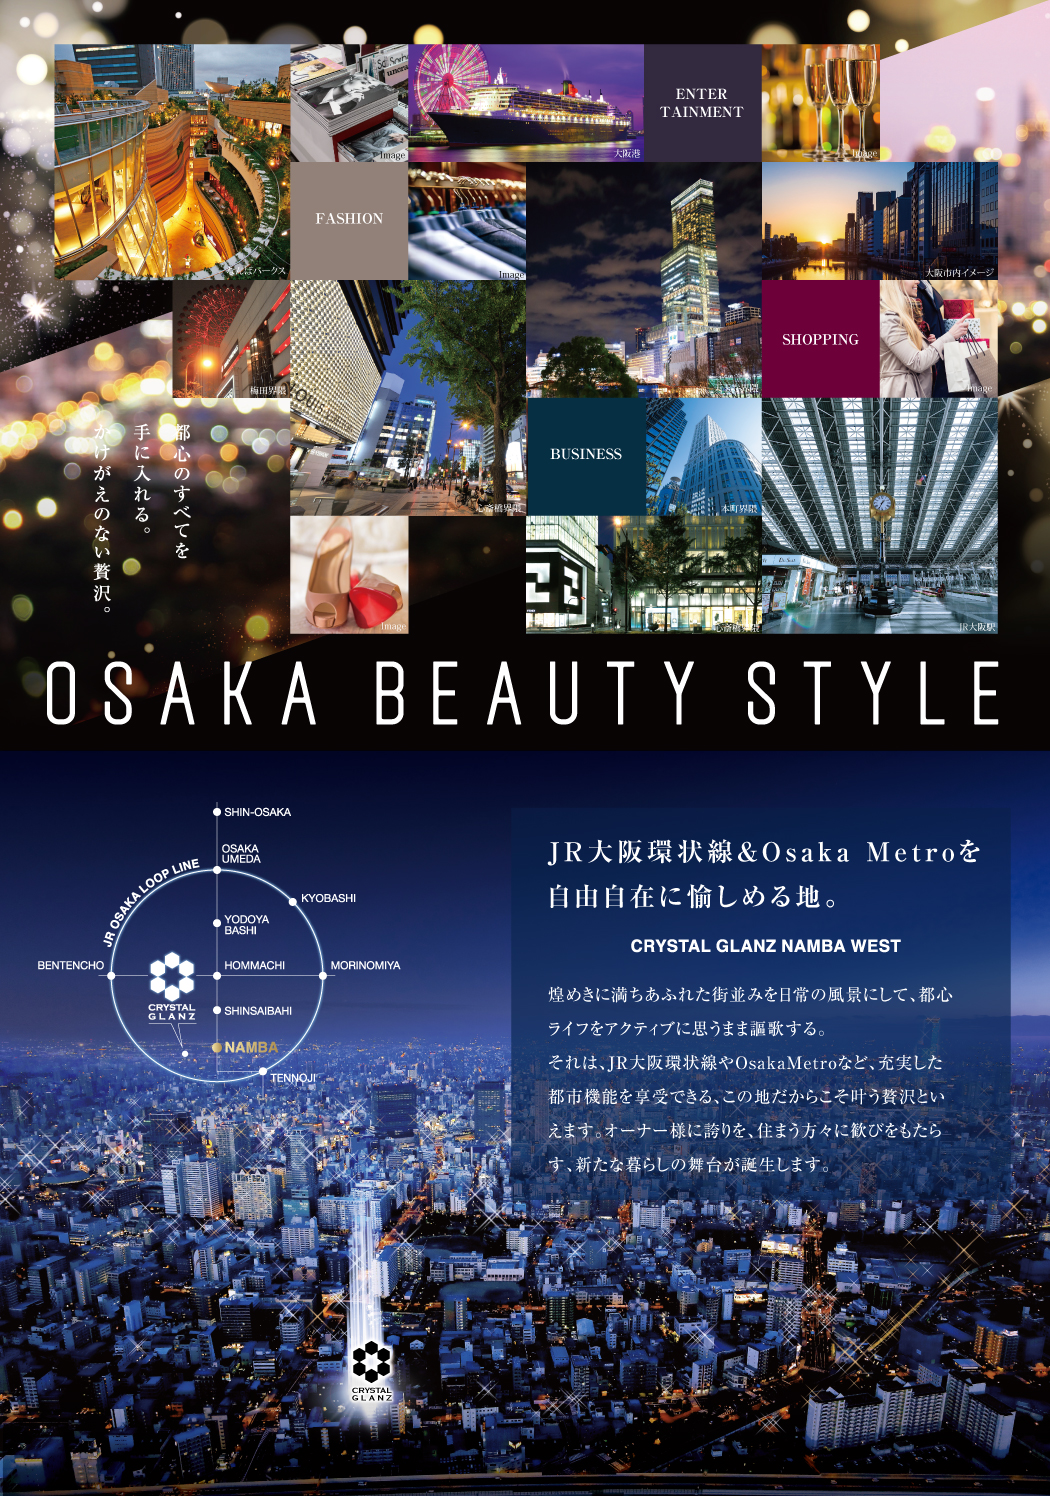 都心のすべてを手に入れる。かけがえのない贅沢。OSAKA BEAUTY STYLE,JR大阪環状線＆Osaka Metroを自由自在に愉しめる地。